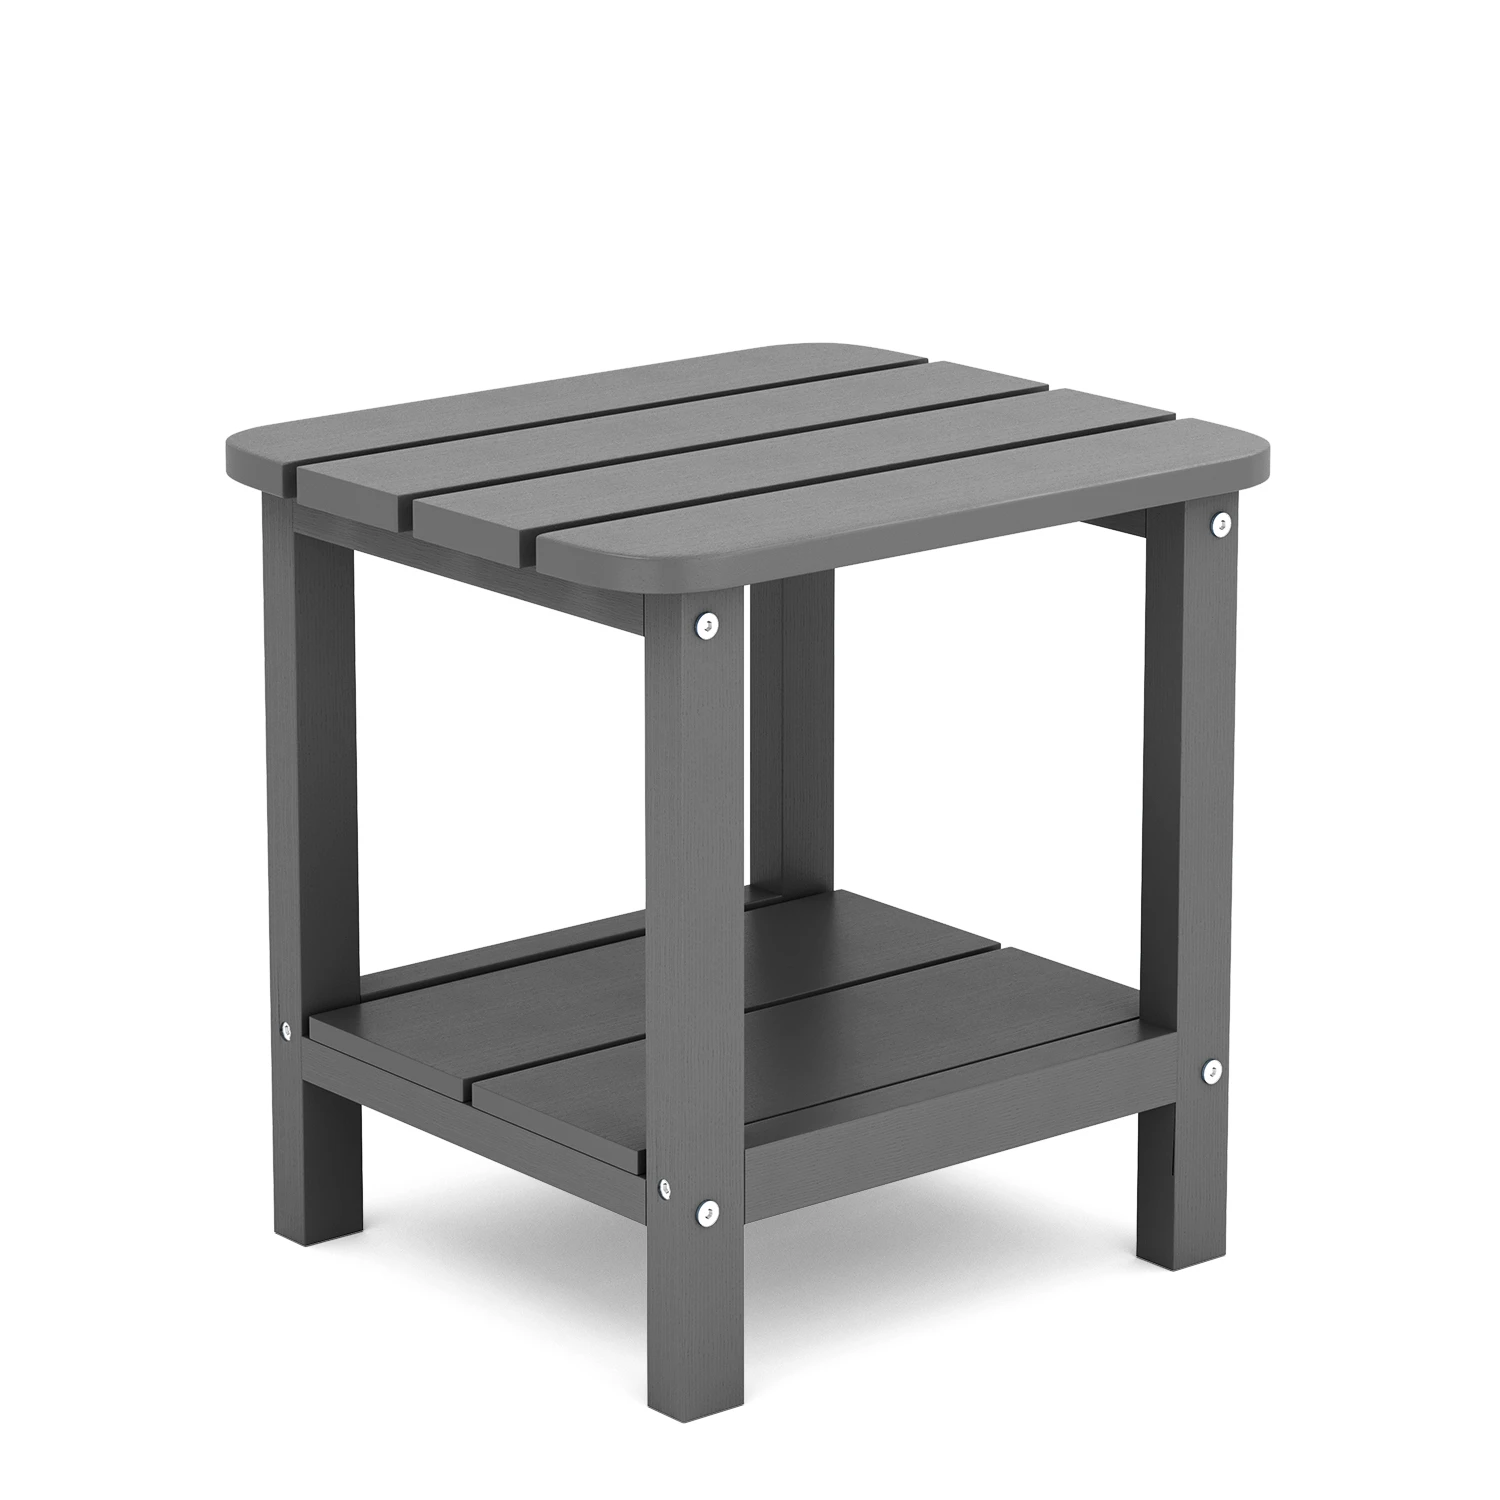 Two Shelf Side Table in Dark Gray